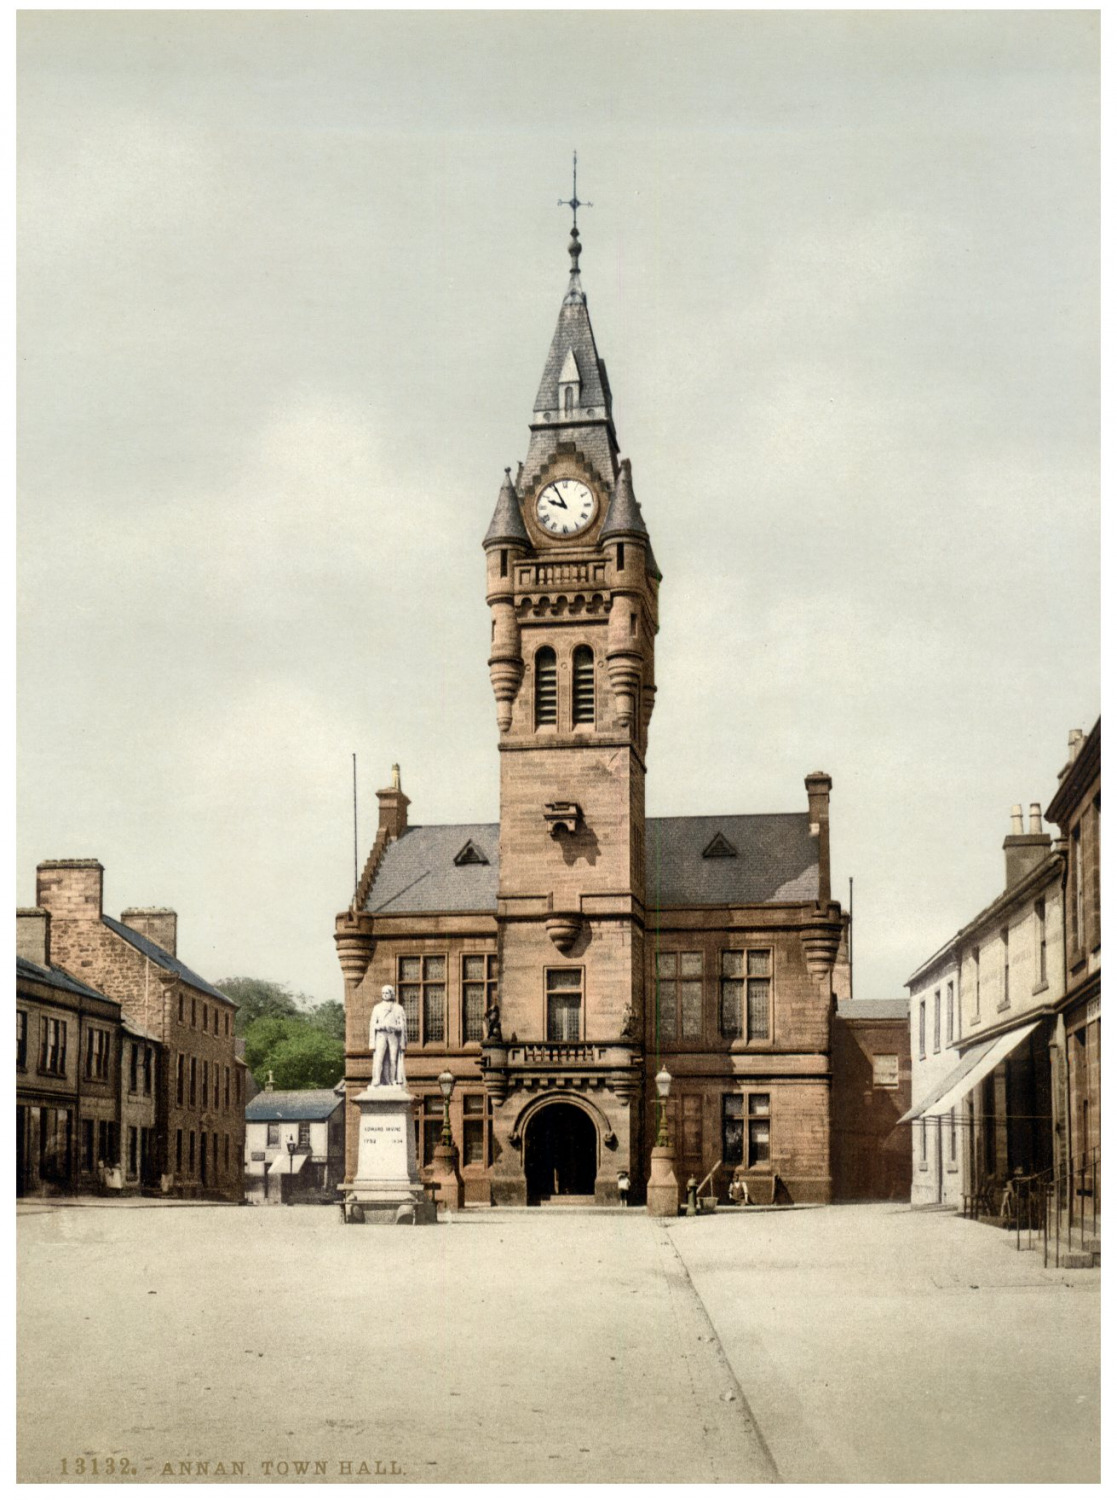 Annan. Town Hall. Vintage PC photochromie, England photochromie, vintage photo